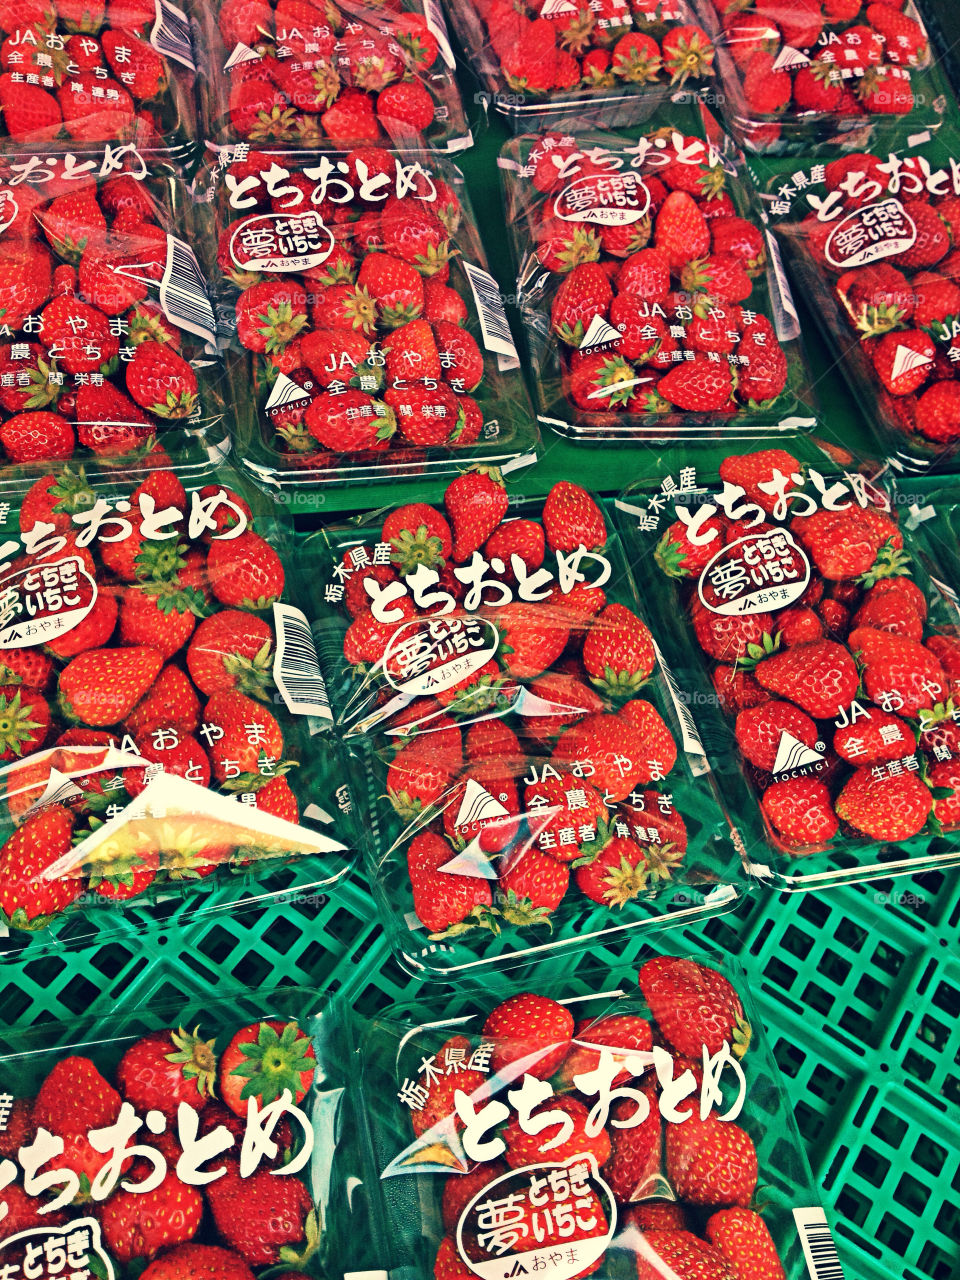 strawberry asia market japan by u2budge